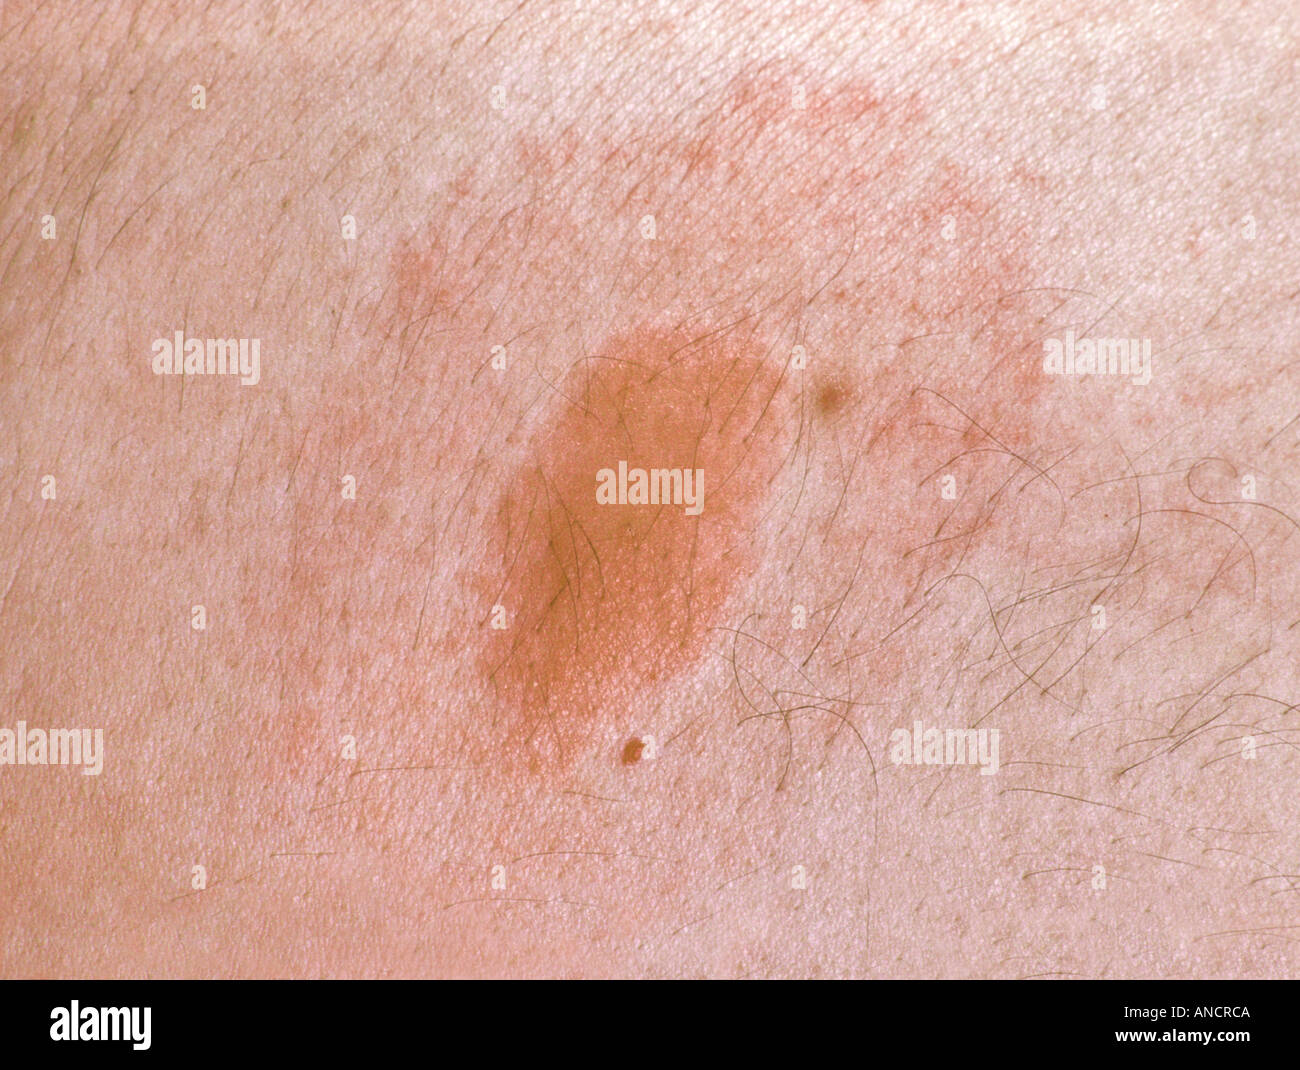 Target Rash from Deer Tick Bite Transmitting Lymes Disease Stock Photo